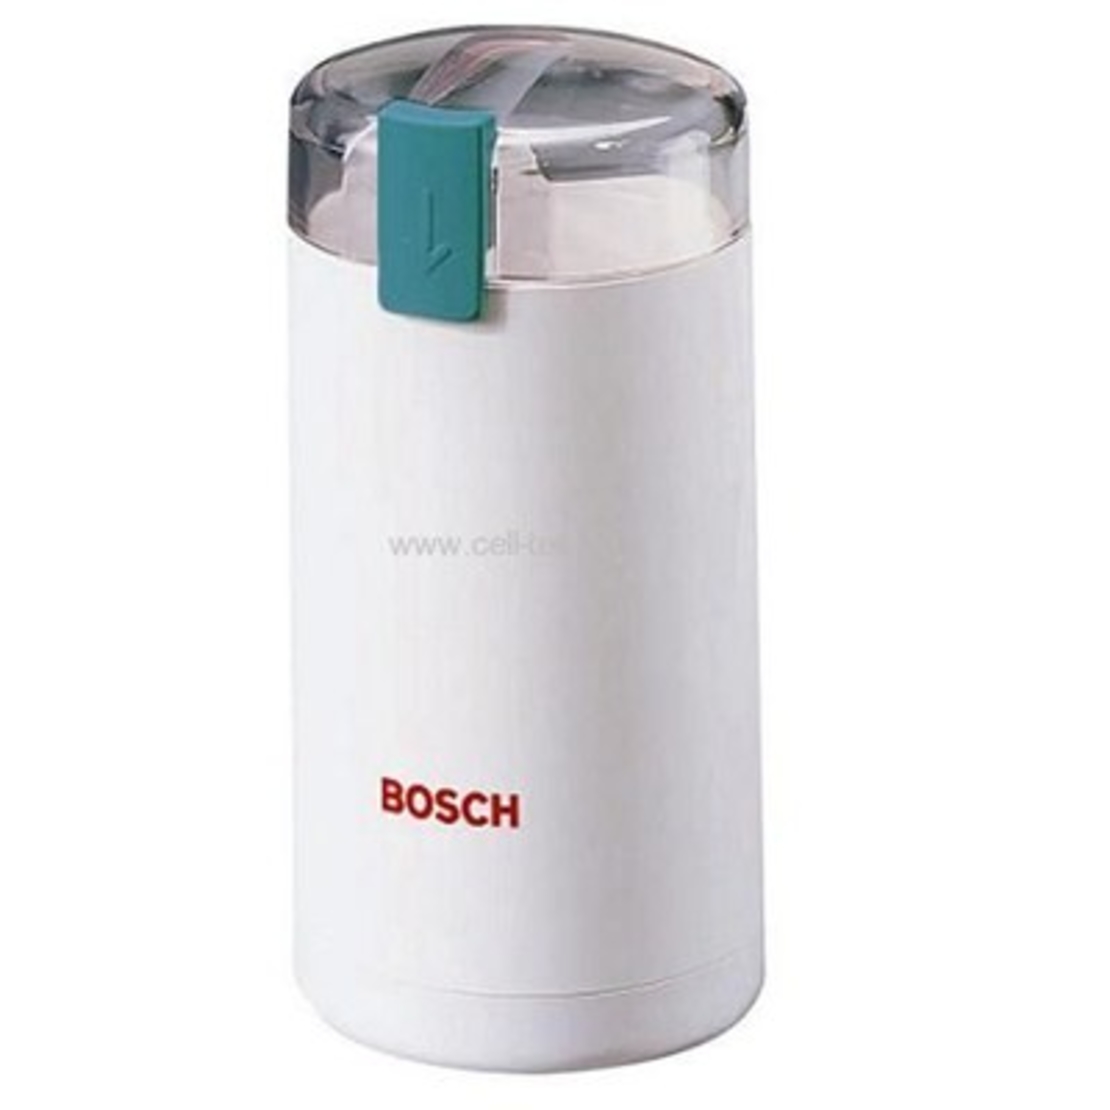 Bosch MKM6000/6003